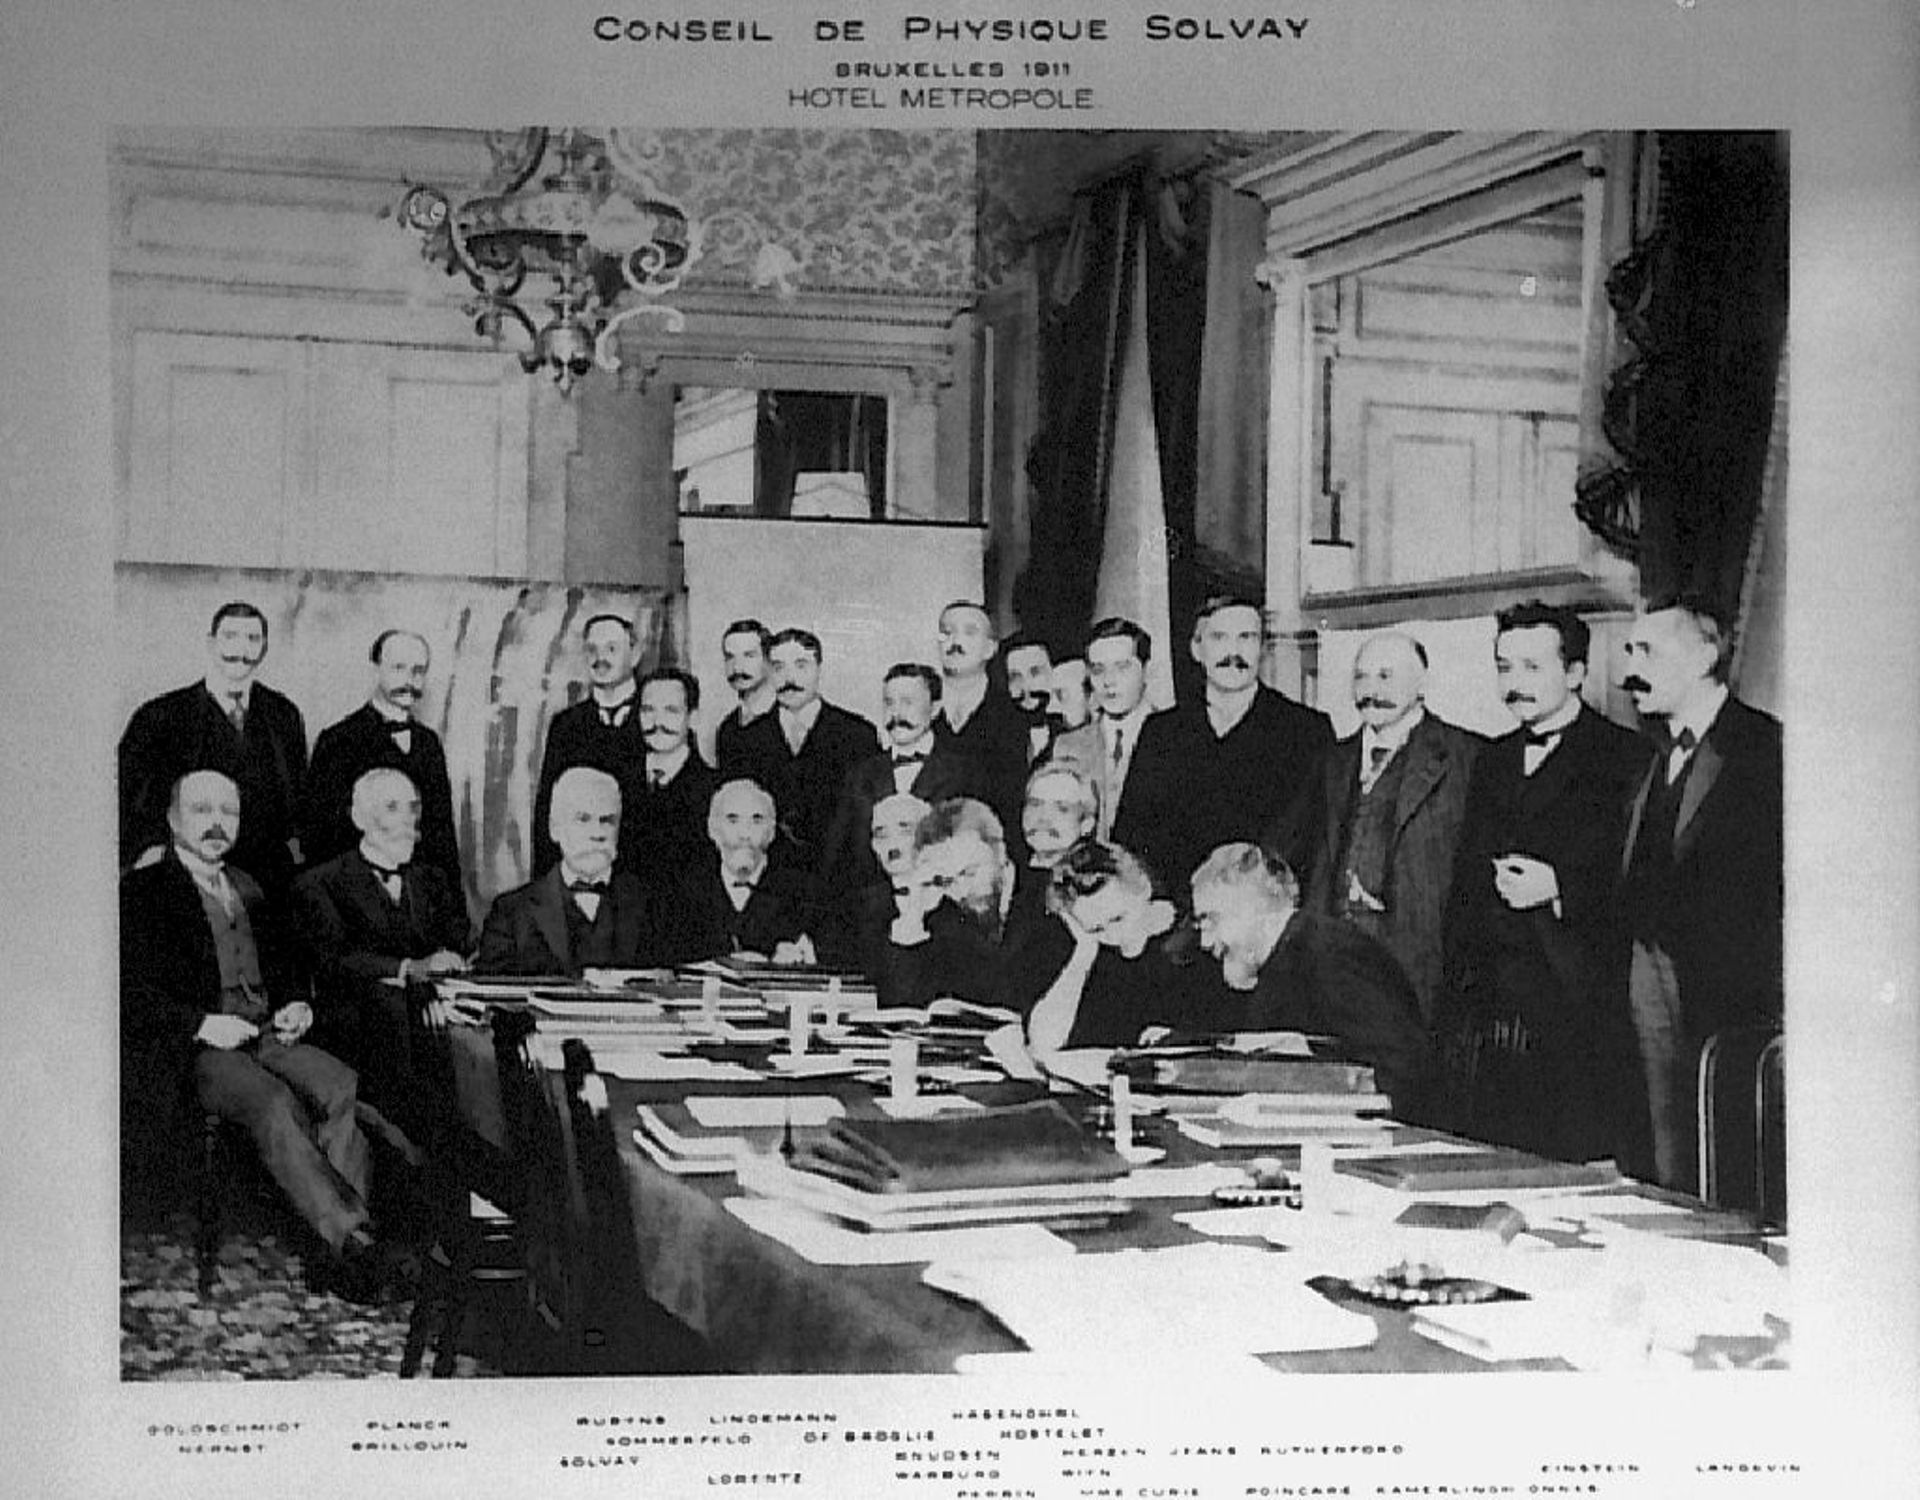 La photo officielle du premier congrès Solvay de physique de 1911 à l'hôtel Métropole de Bruxelles.  